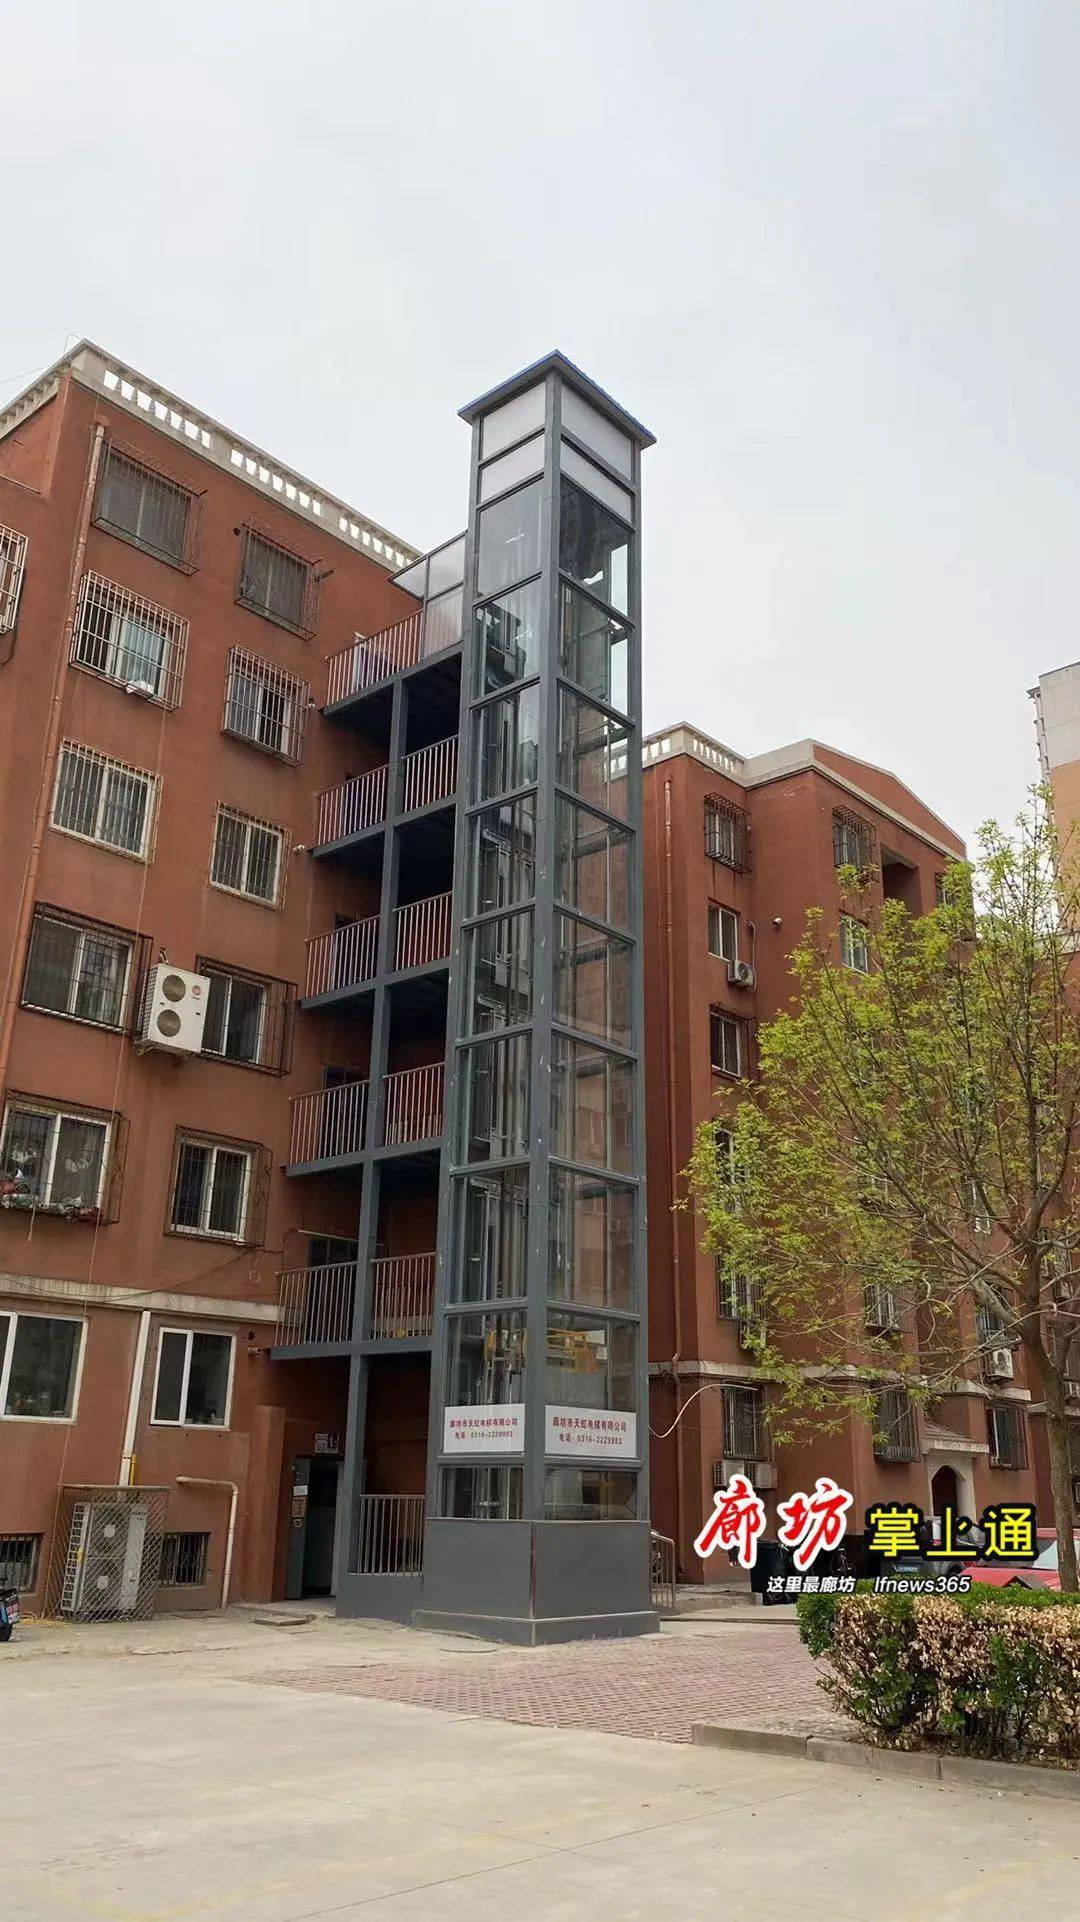 吉祥小区12号楼1单元是我市首个老旧小区加装电梯试点.